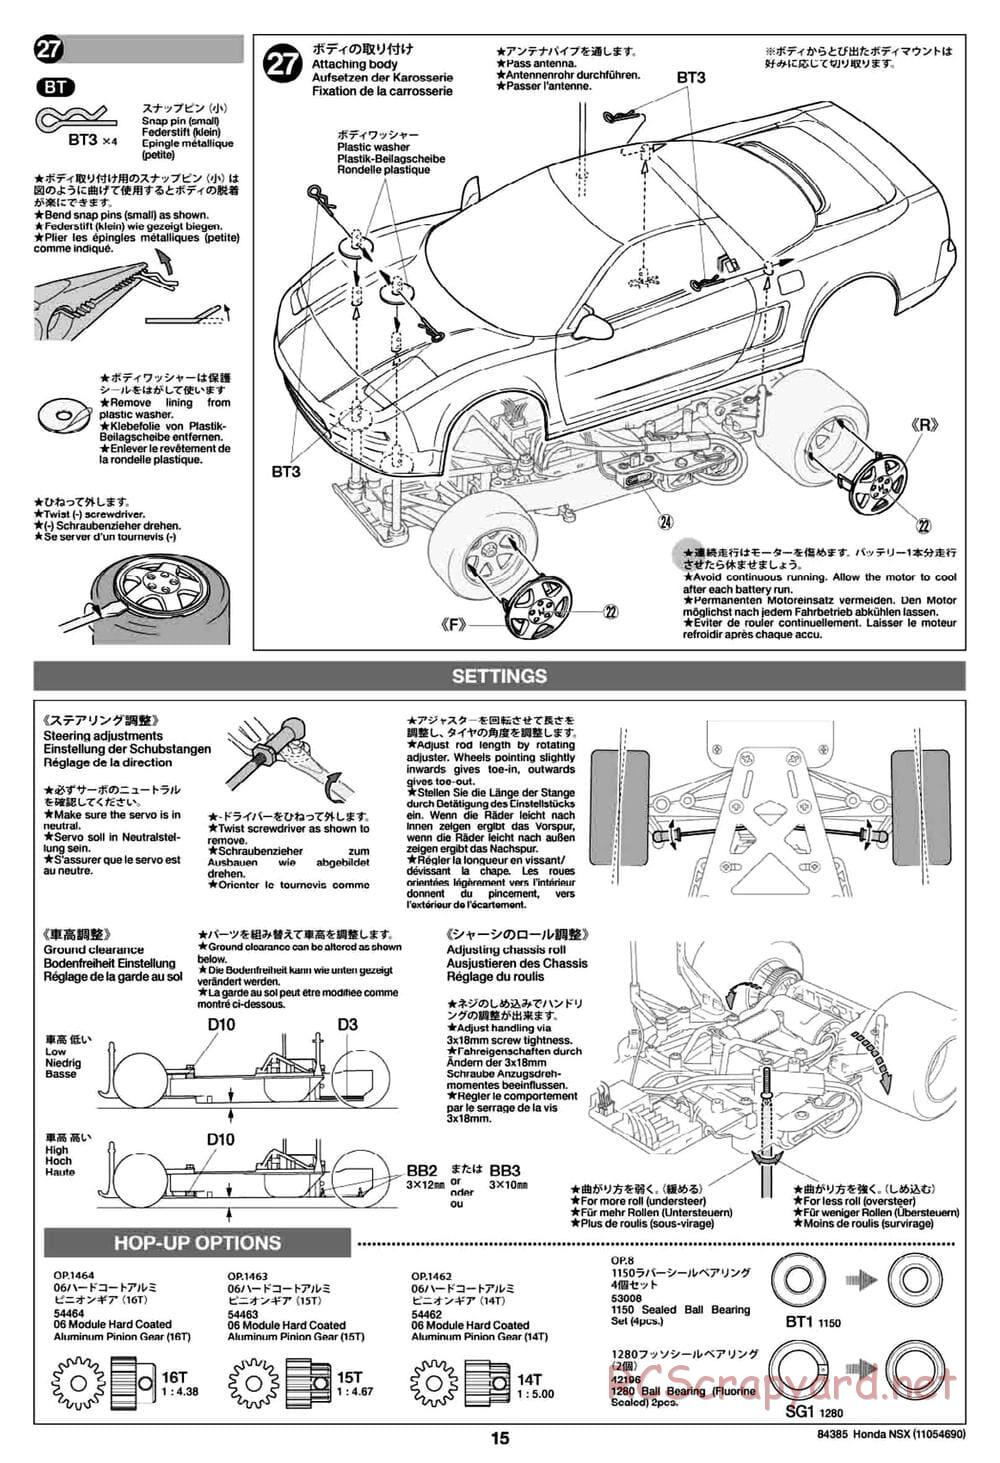 Tamiya - Honda NSX - Group-C Chassis - Manual - Page 15